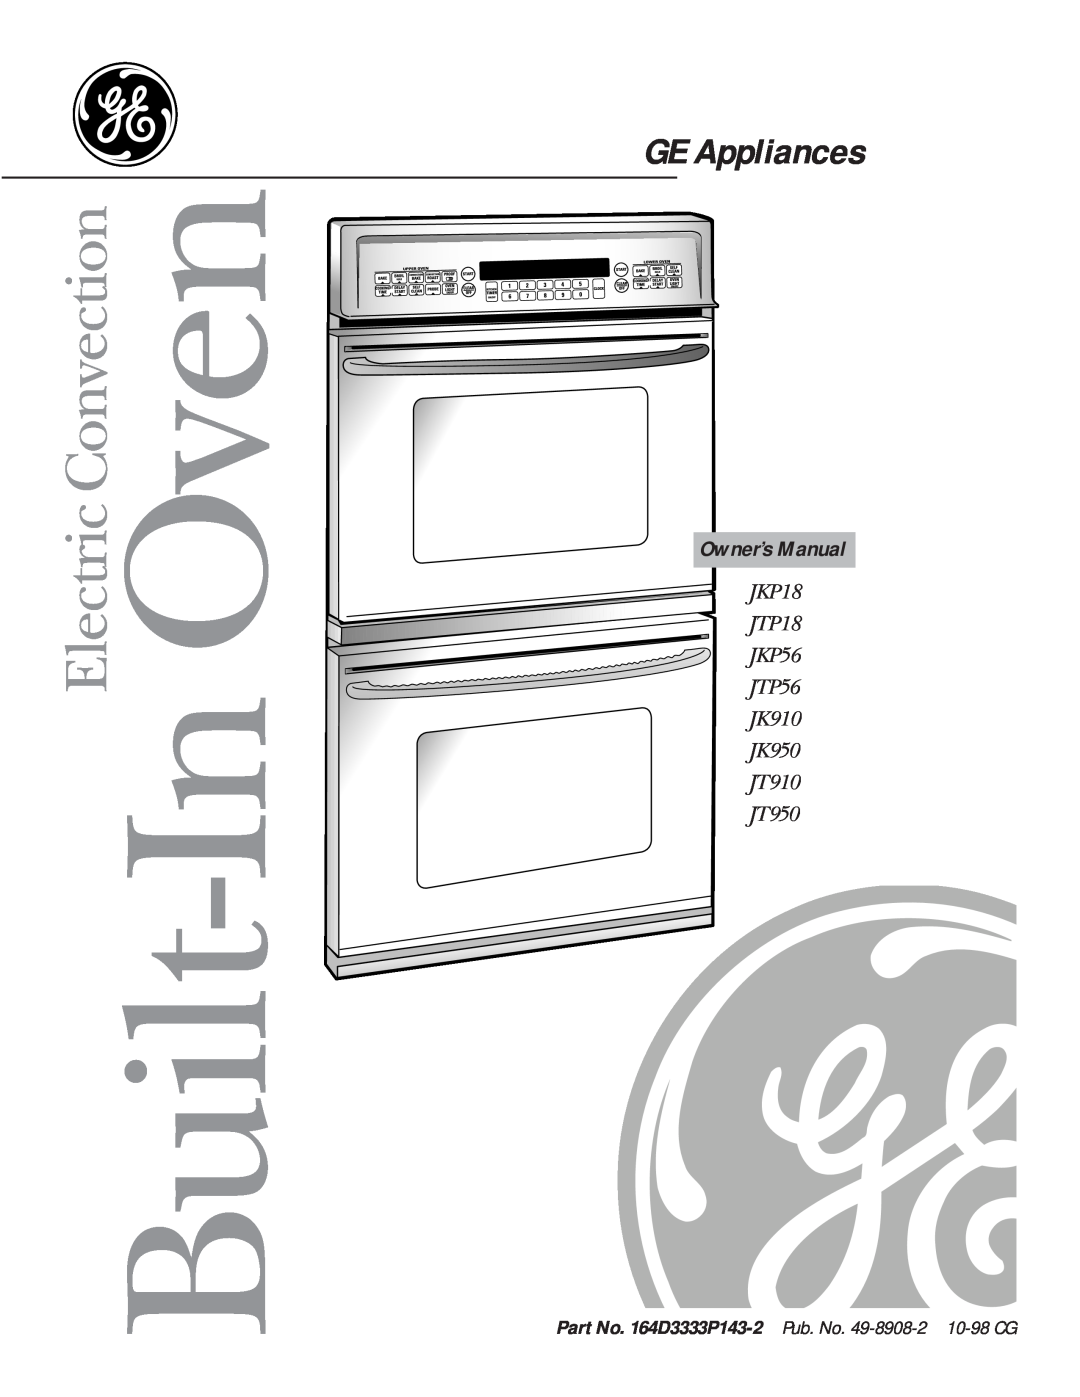 GE jt950 owner manual Owner’s Manual, GE Appliances, Built-In Oven, JKP18 JTP18 JKP56 JTP56 JK910 JK950 JT910 JT950 